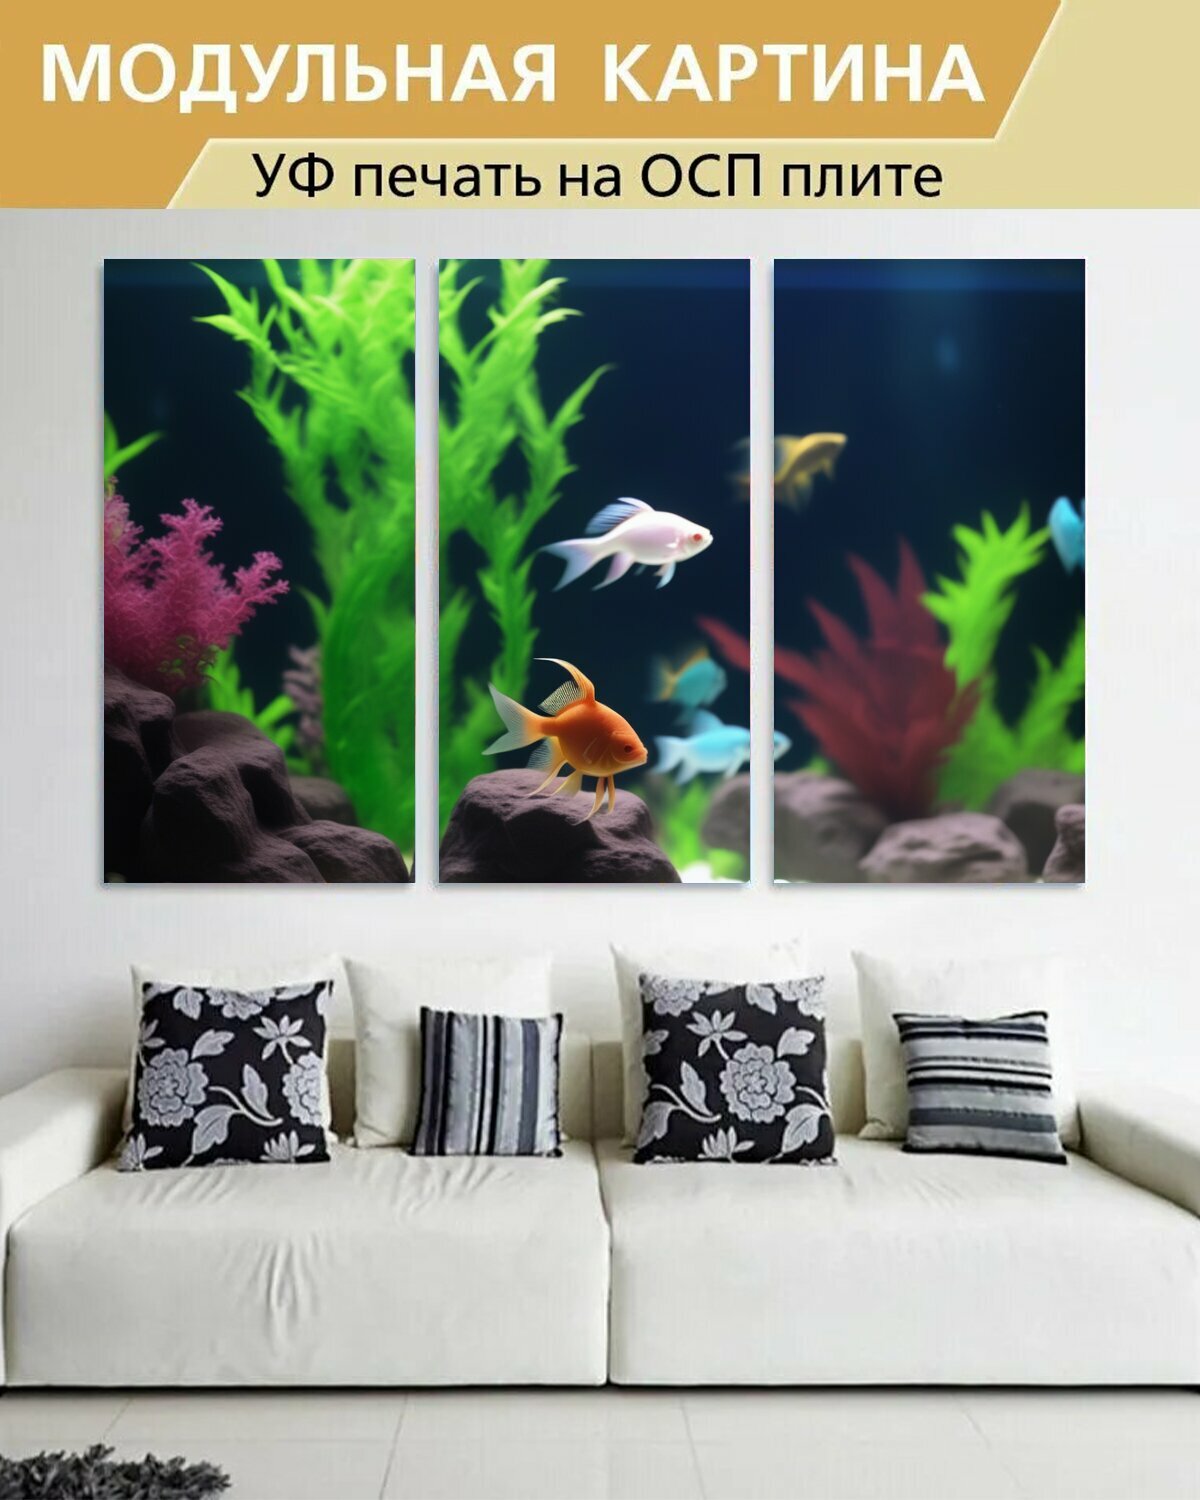 Модульная картина на ОСП любителям природы "Животные, аквариумная рыбка, за стеклом" 188x125 см. 3 части для интерьера на стену